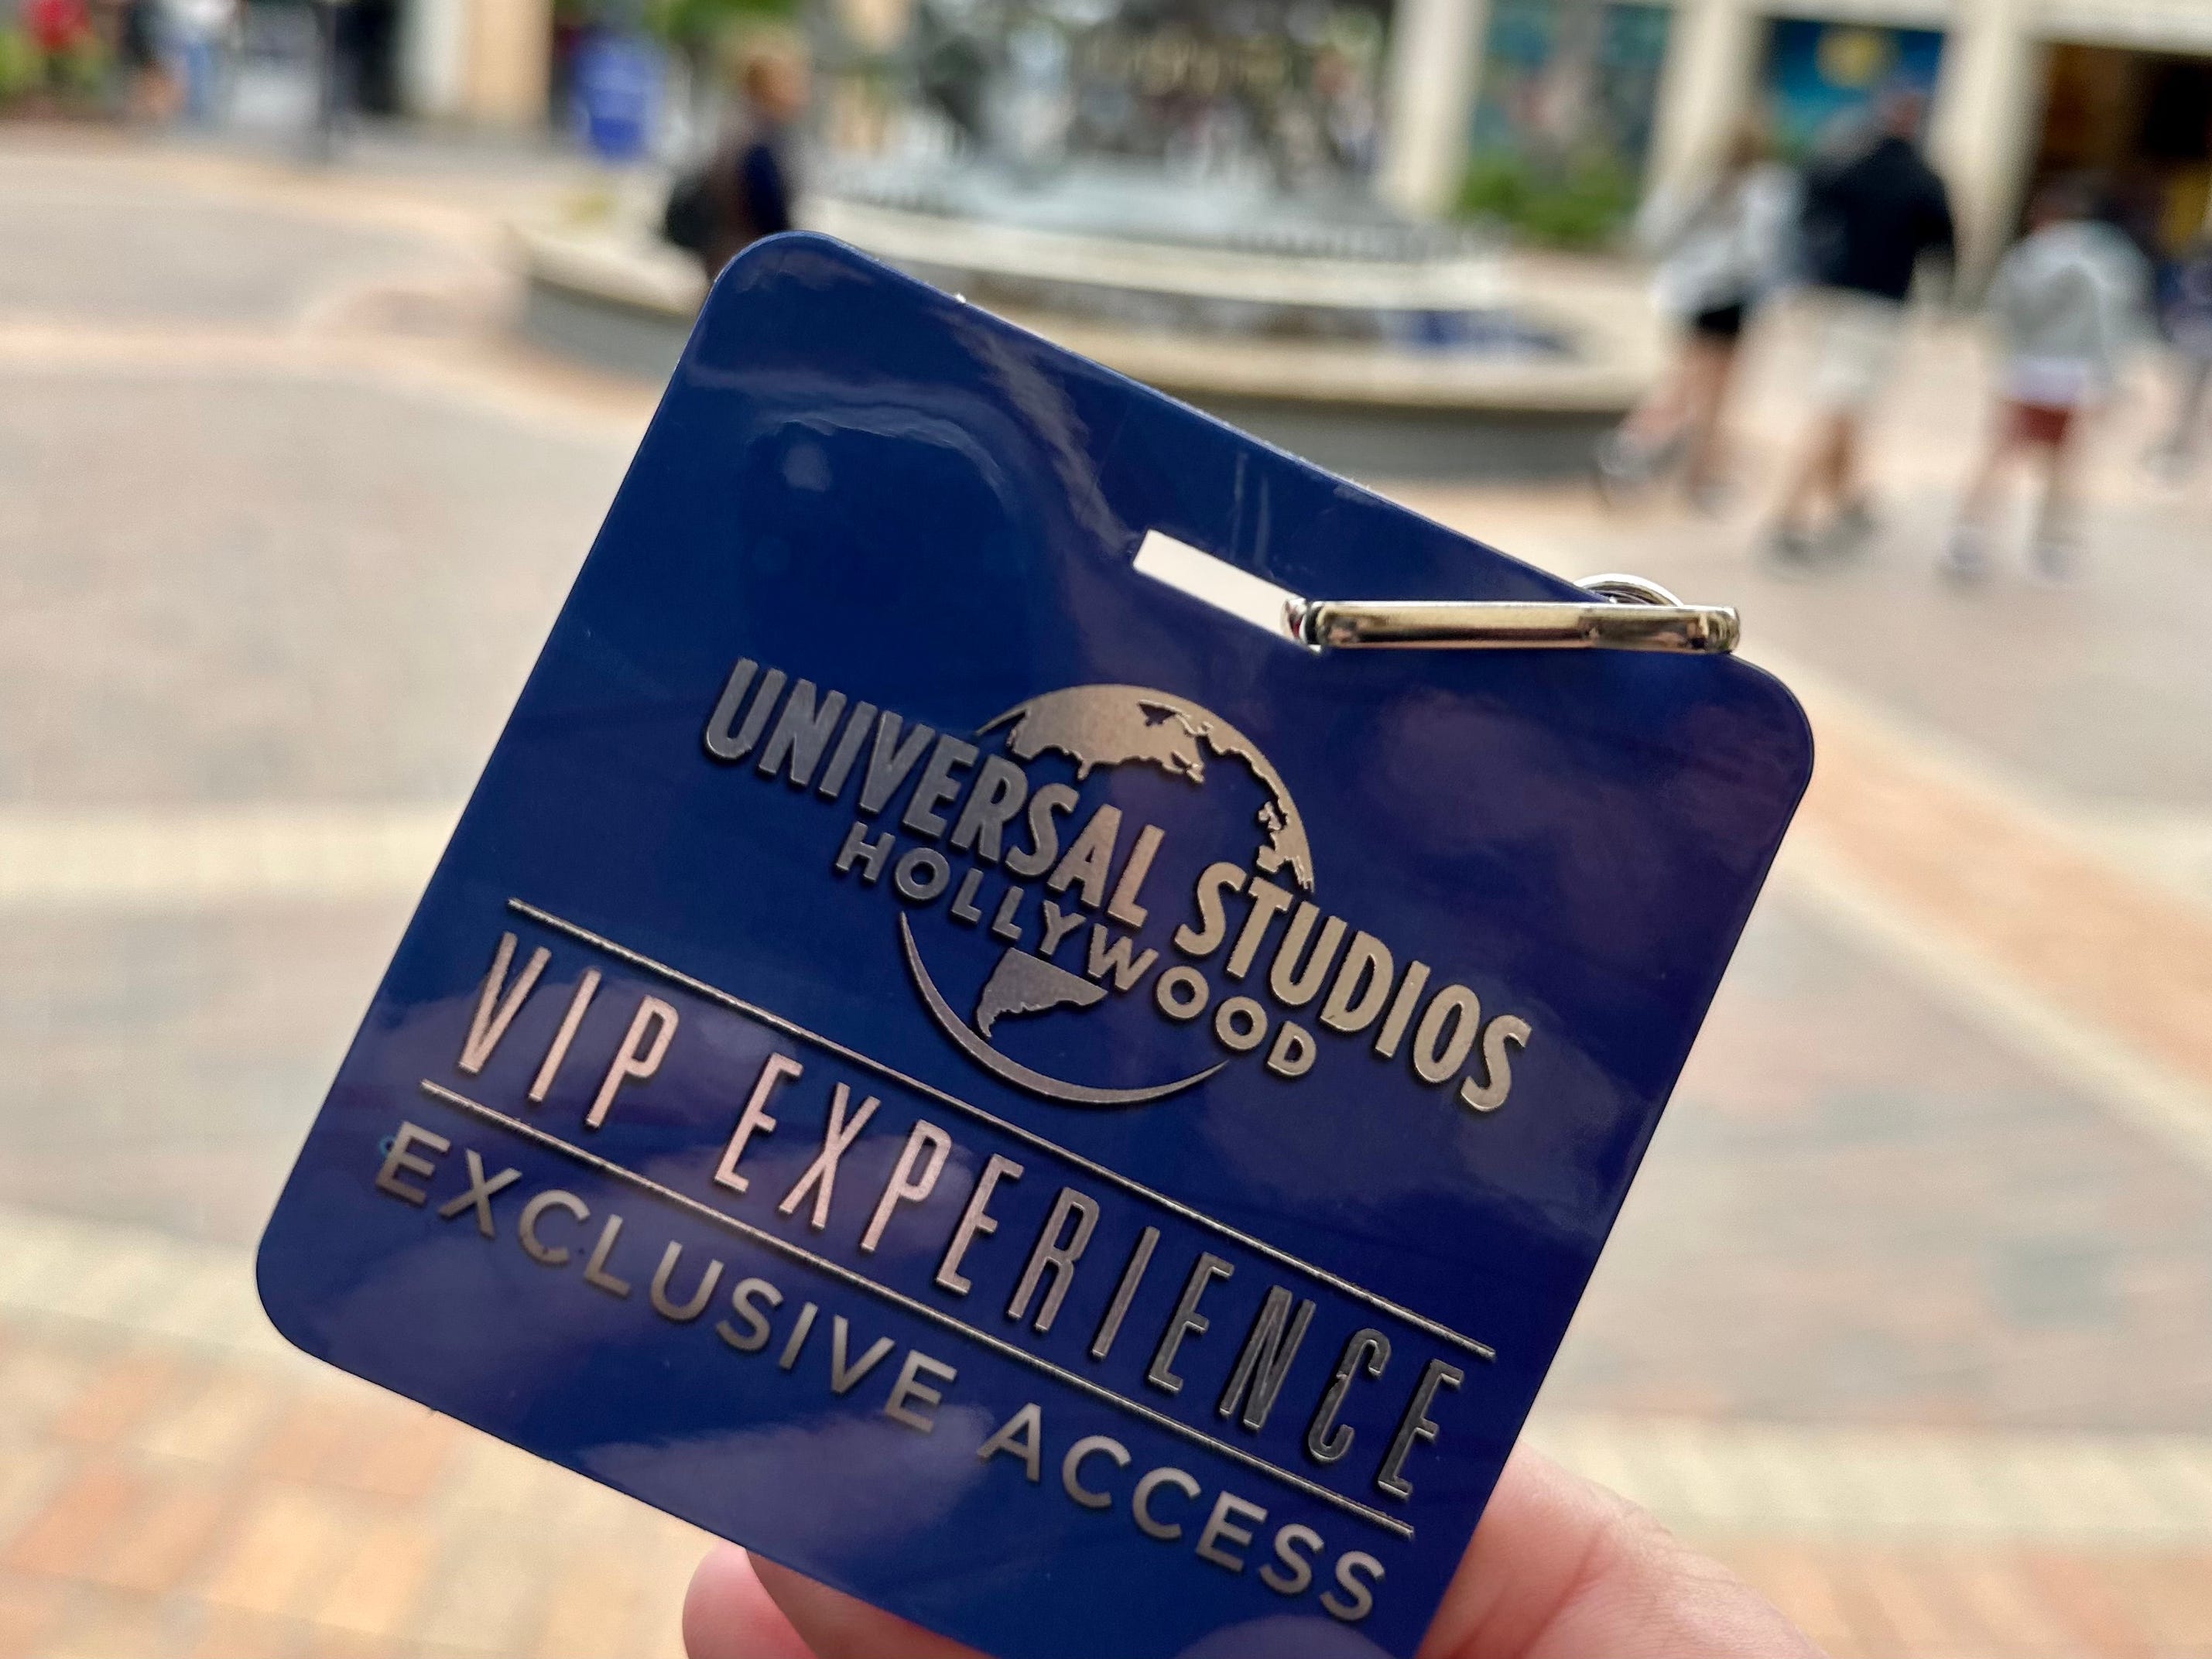 VIP-Erlebnispass für Universal Studio auf glänzendem blauem Material